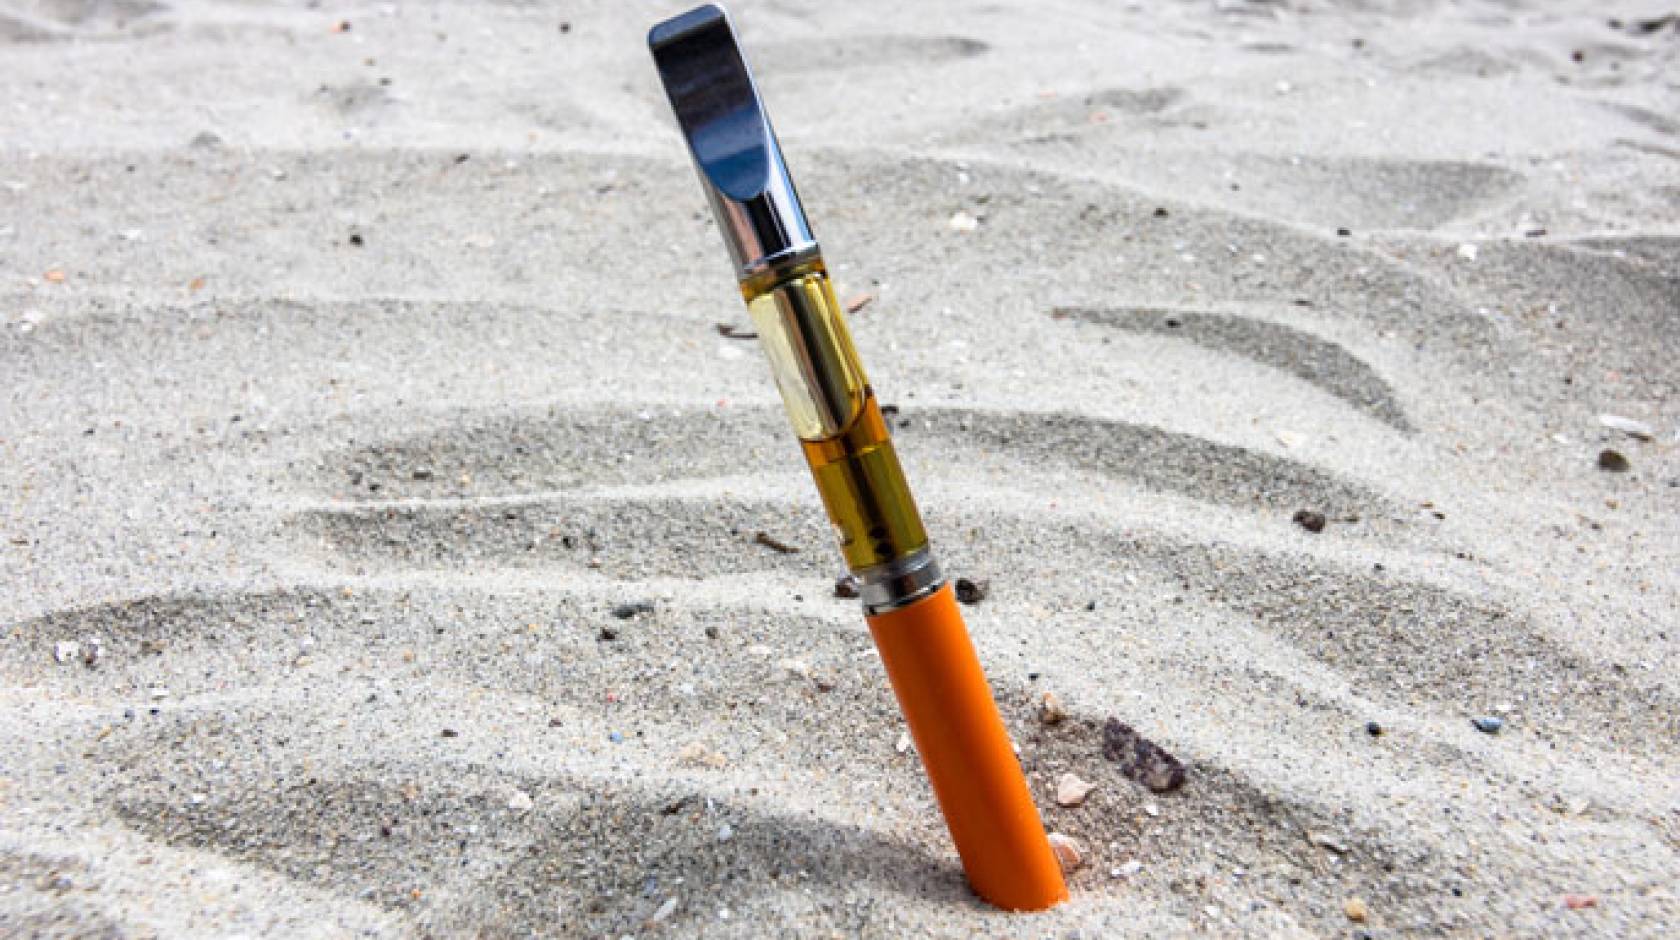 Vape pen stuck in sand